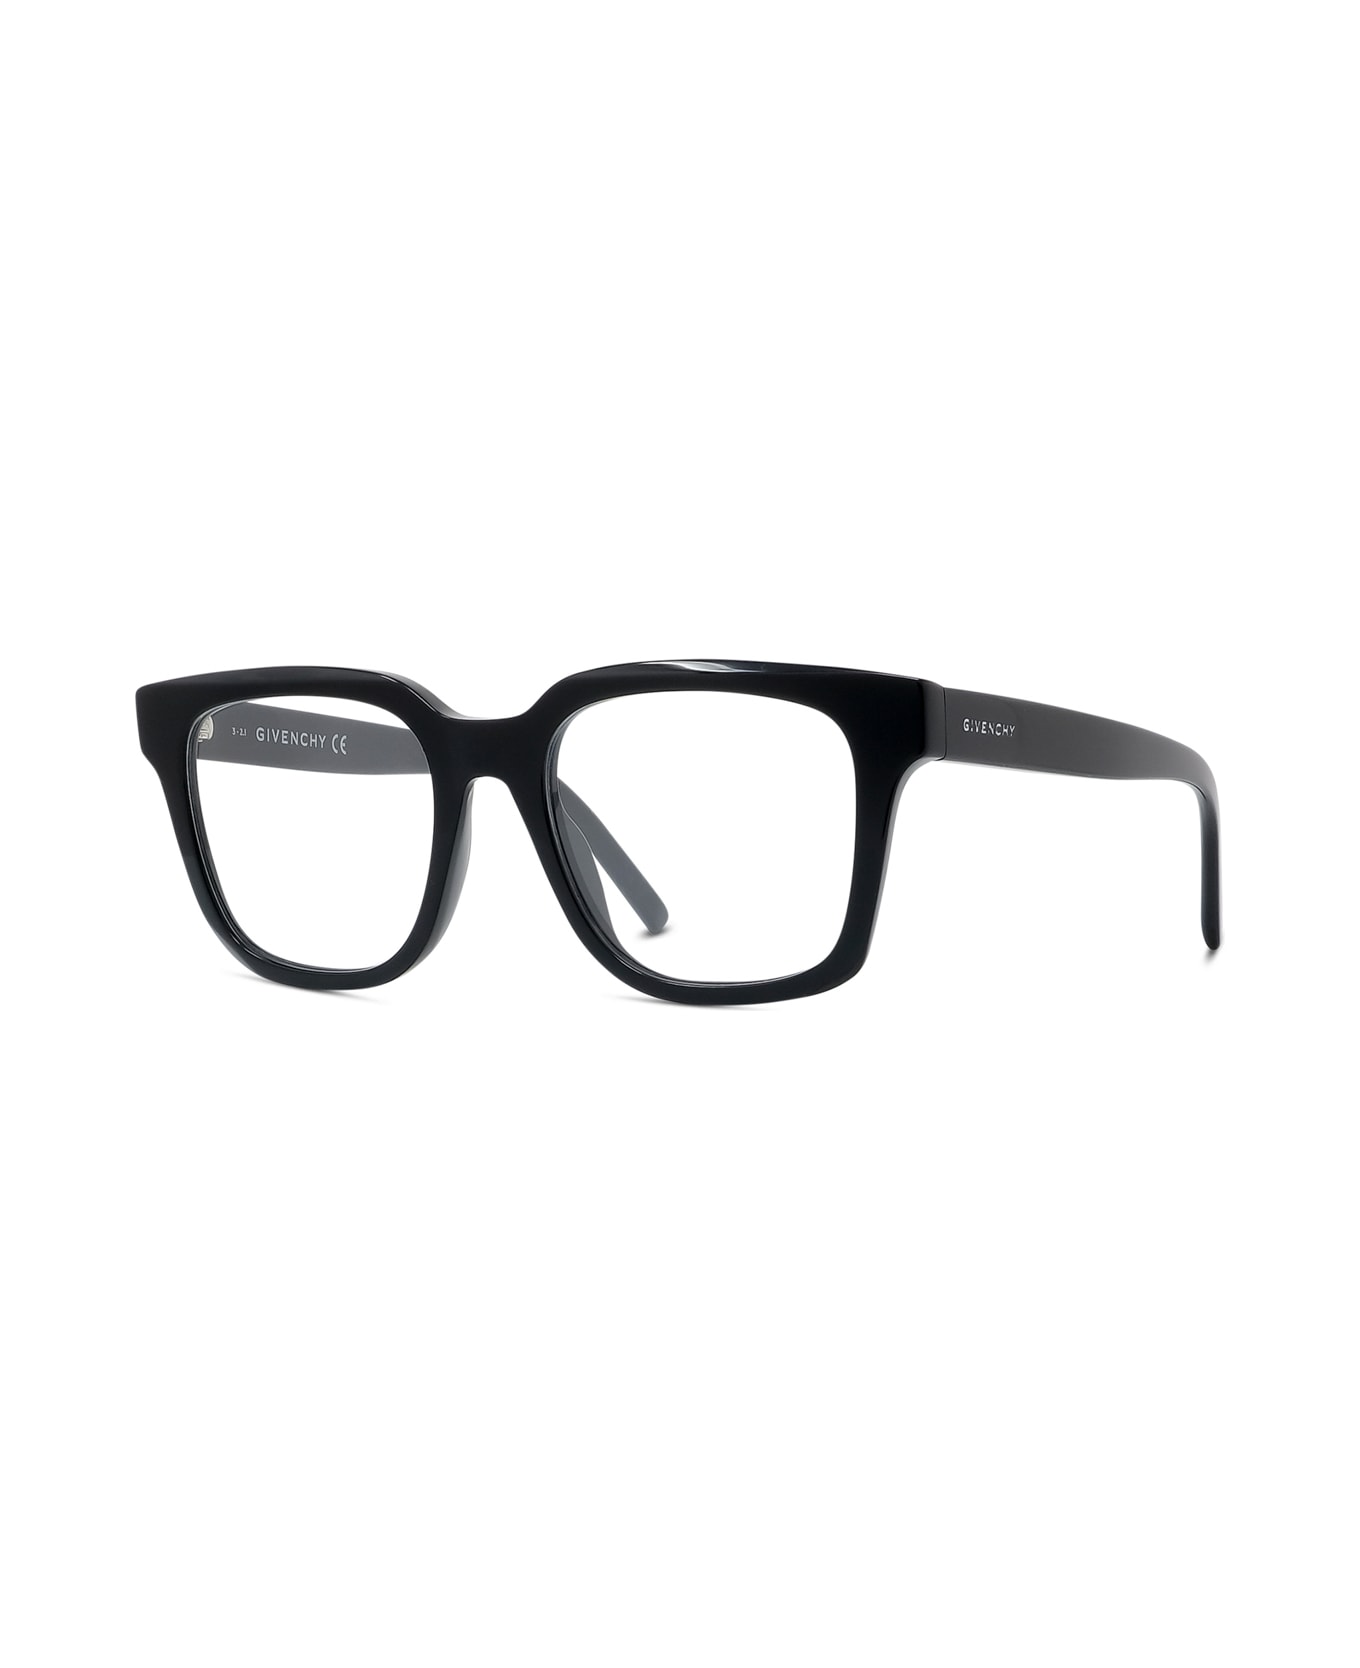 Givenchy Eyewear Gv50005i 001 Glasses - Nero